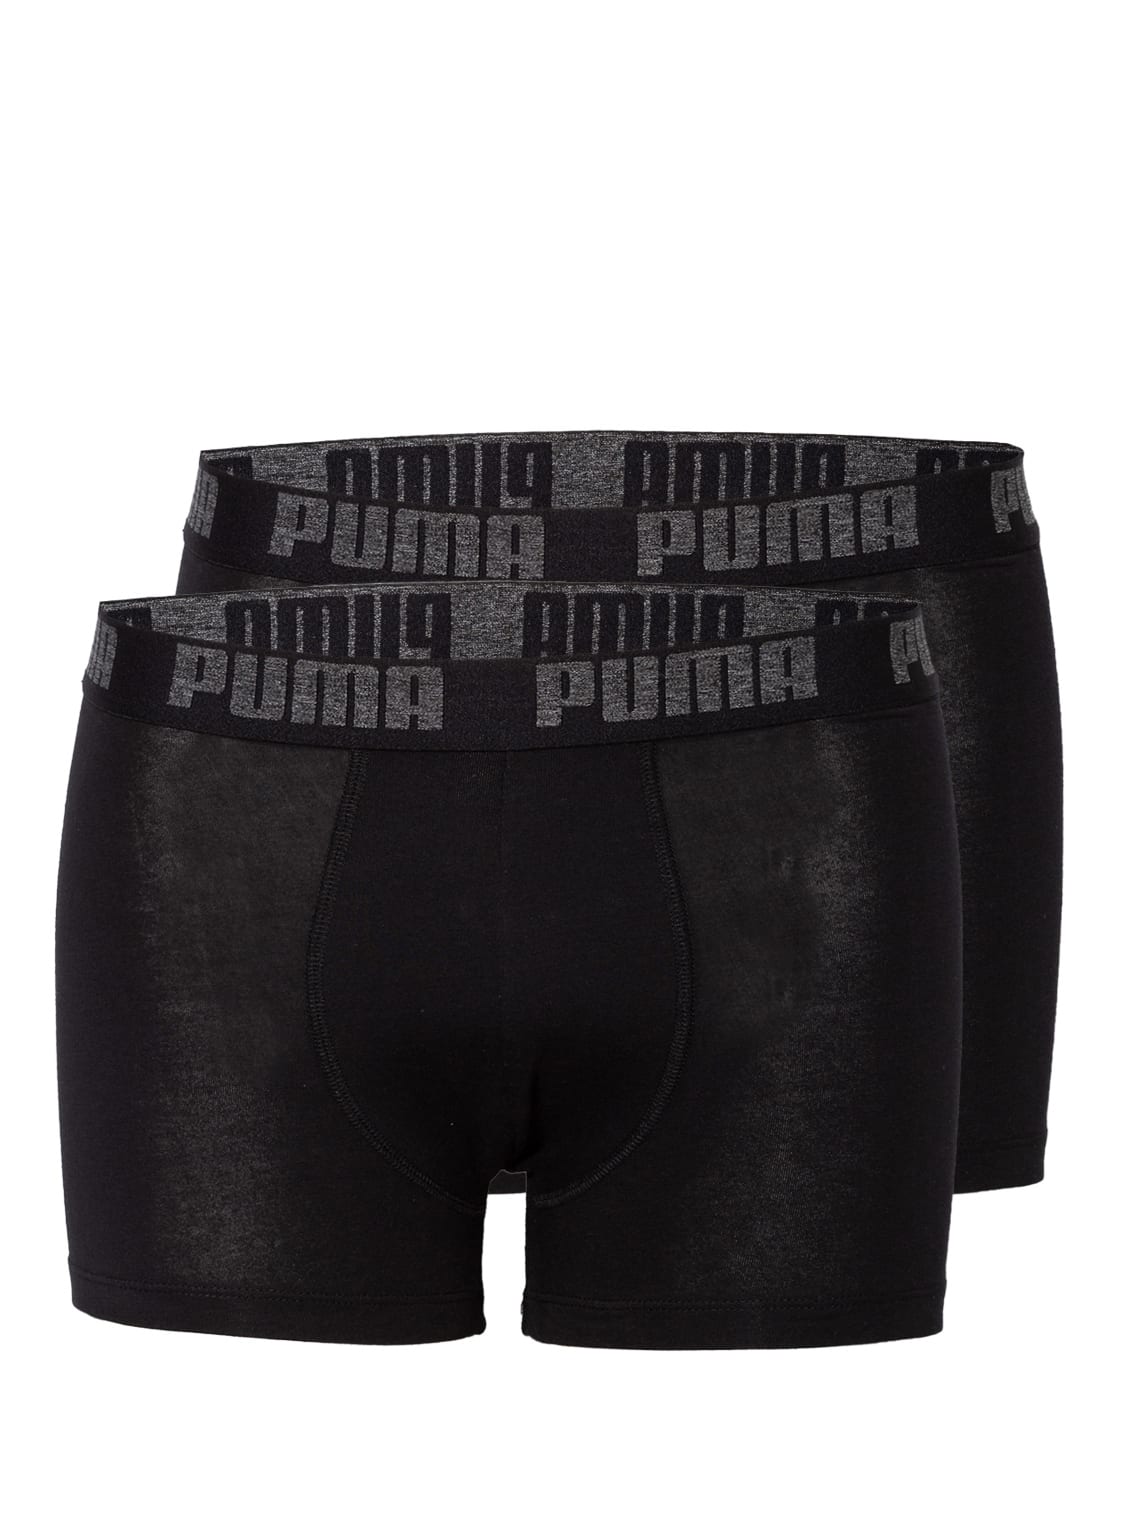 Puma 2er-Pack Boxershorts Cotton Stretch schwarz